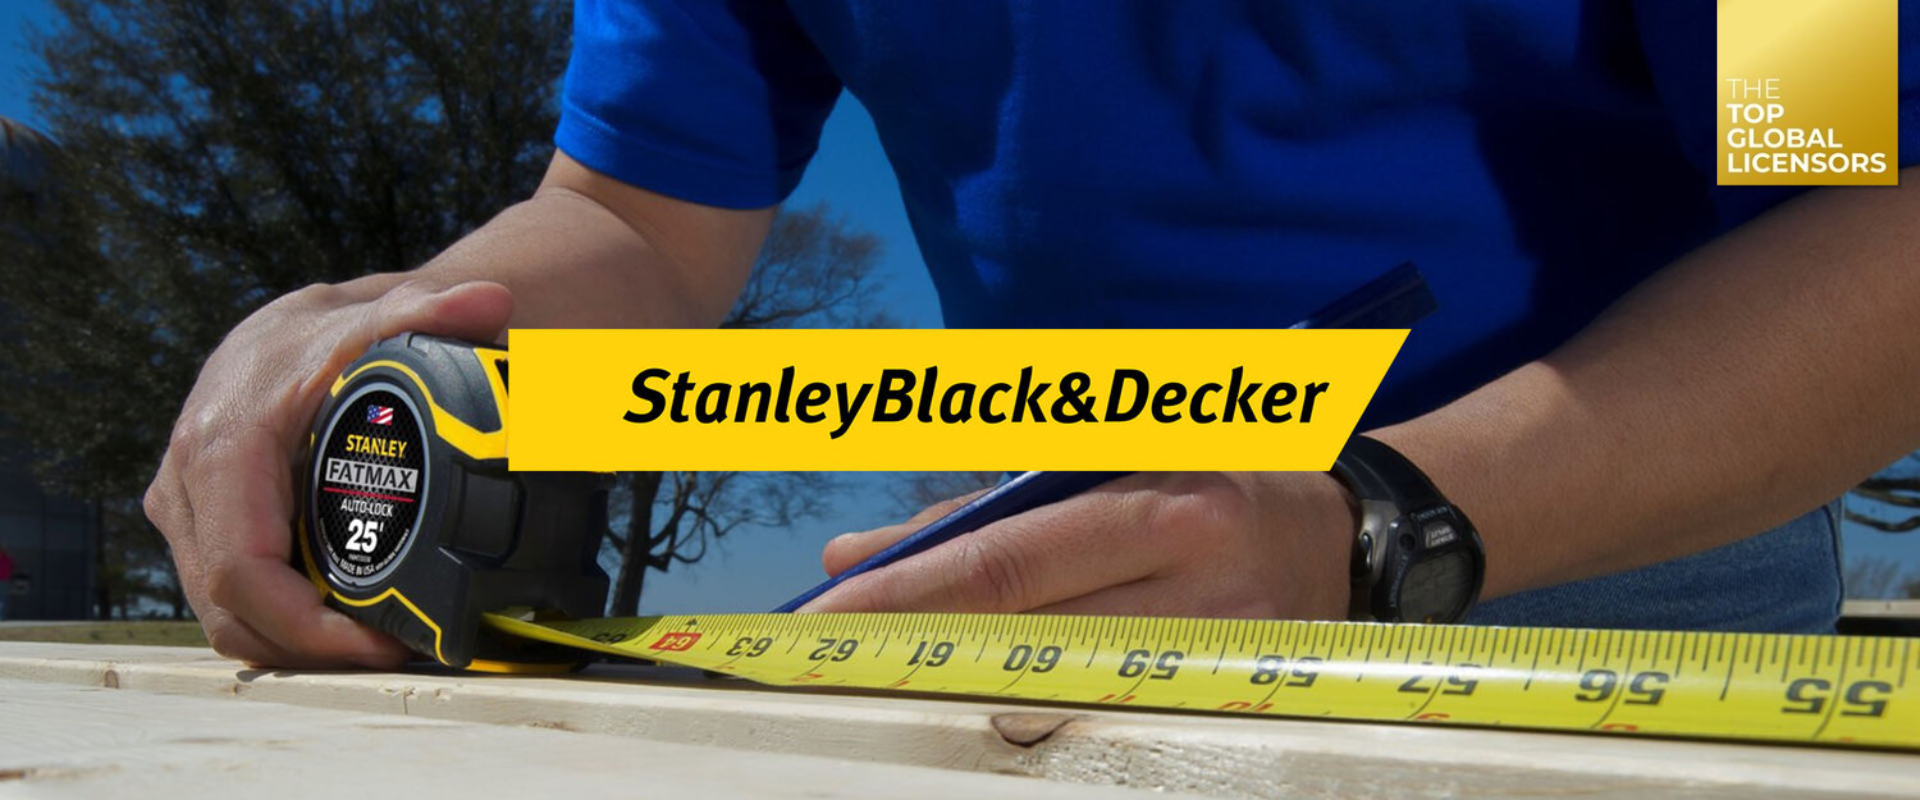 Stanley Black & Decker — Beanstalk